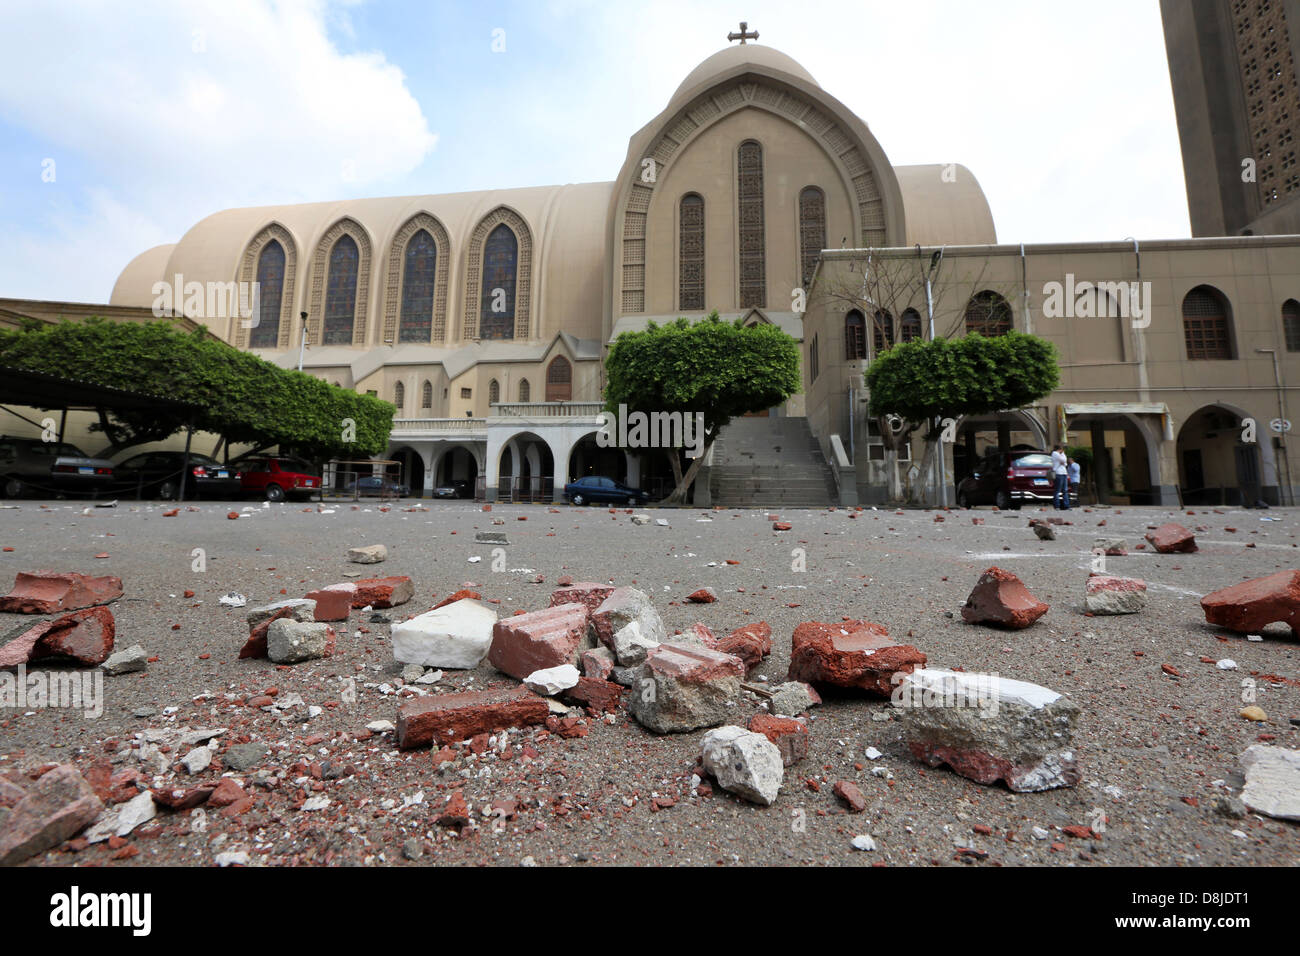 Des pierres lancées sur le sol de la Cathédrale Saint Marc du Caire, siège du Pape Tawadros II, le chef de l'Église copte d'Égypte Banque D'Images